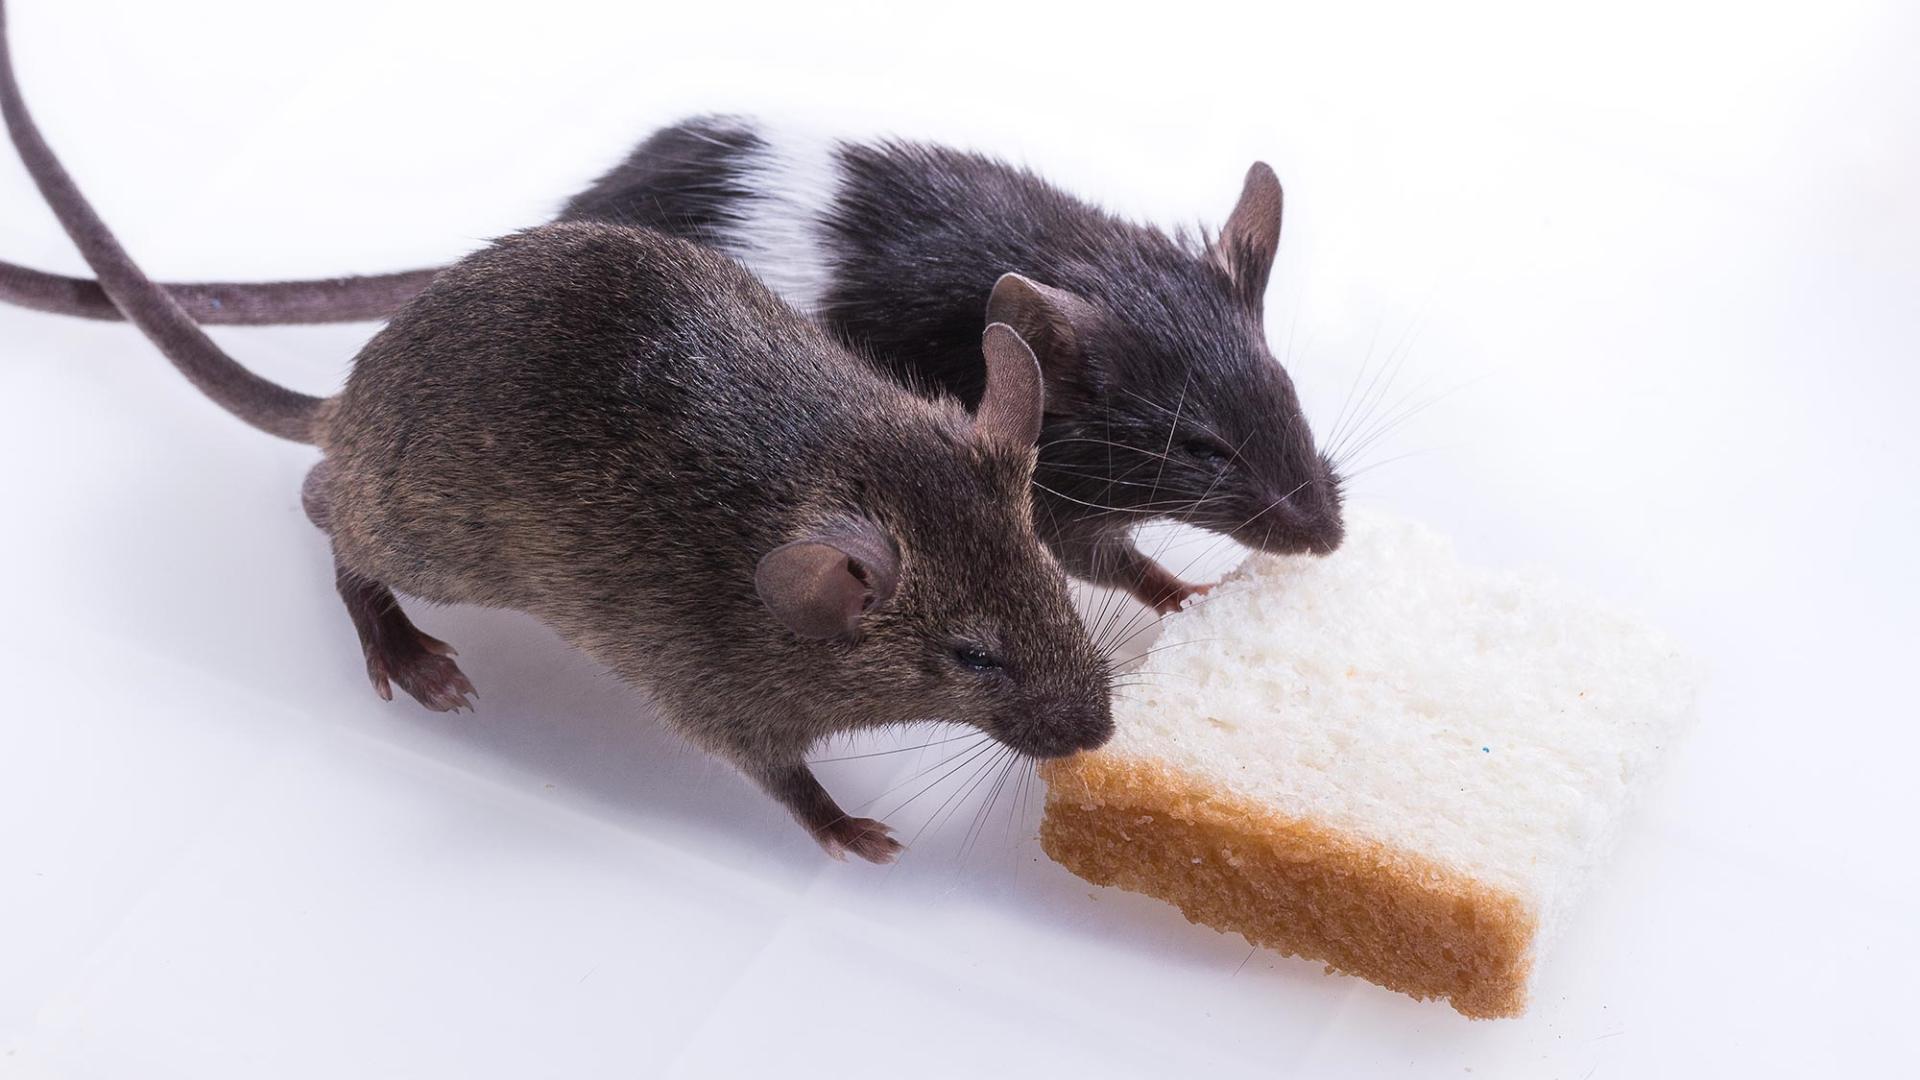 Серые крысы распознали голод сородичей по запаху и добыли им еду